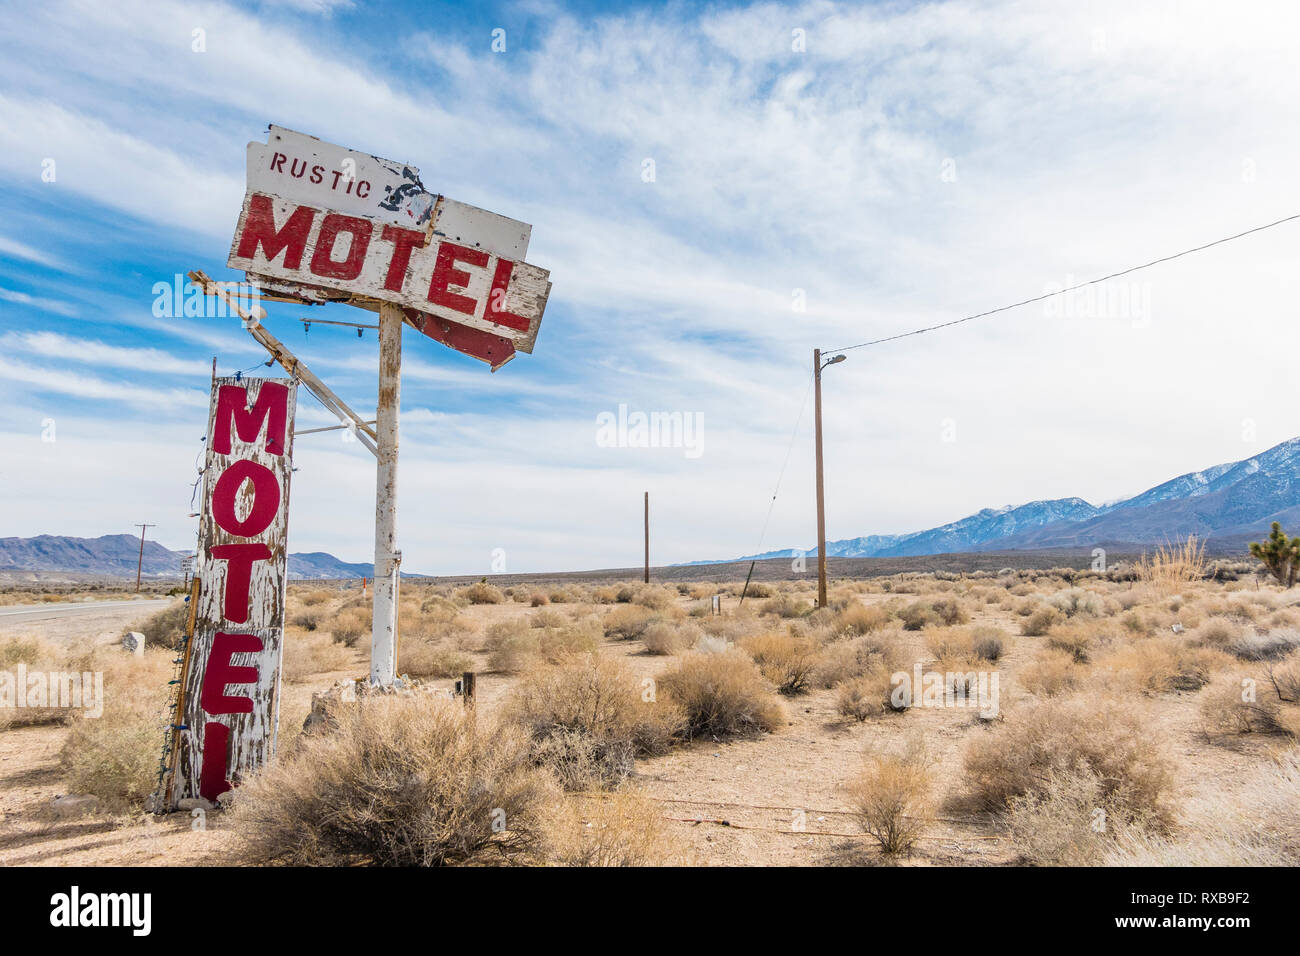 La rustica Oasis Motel segno è un americano di attrazione sul ciglio della strada lungo la California highway 395 nella Sierra orientale. Foto Stock